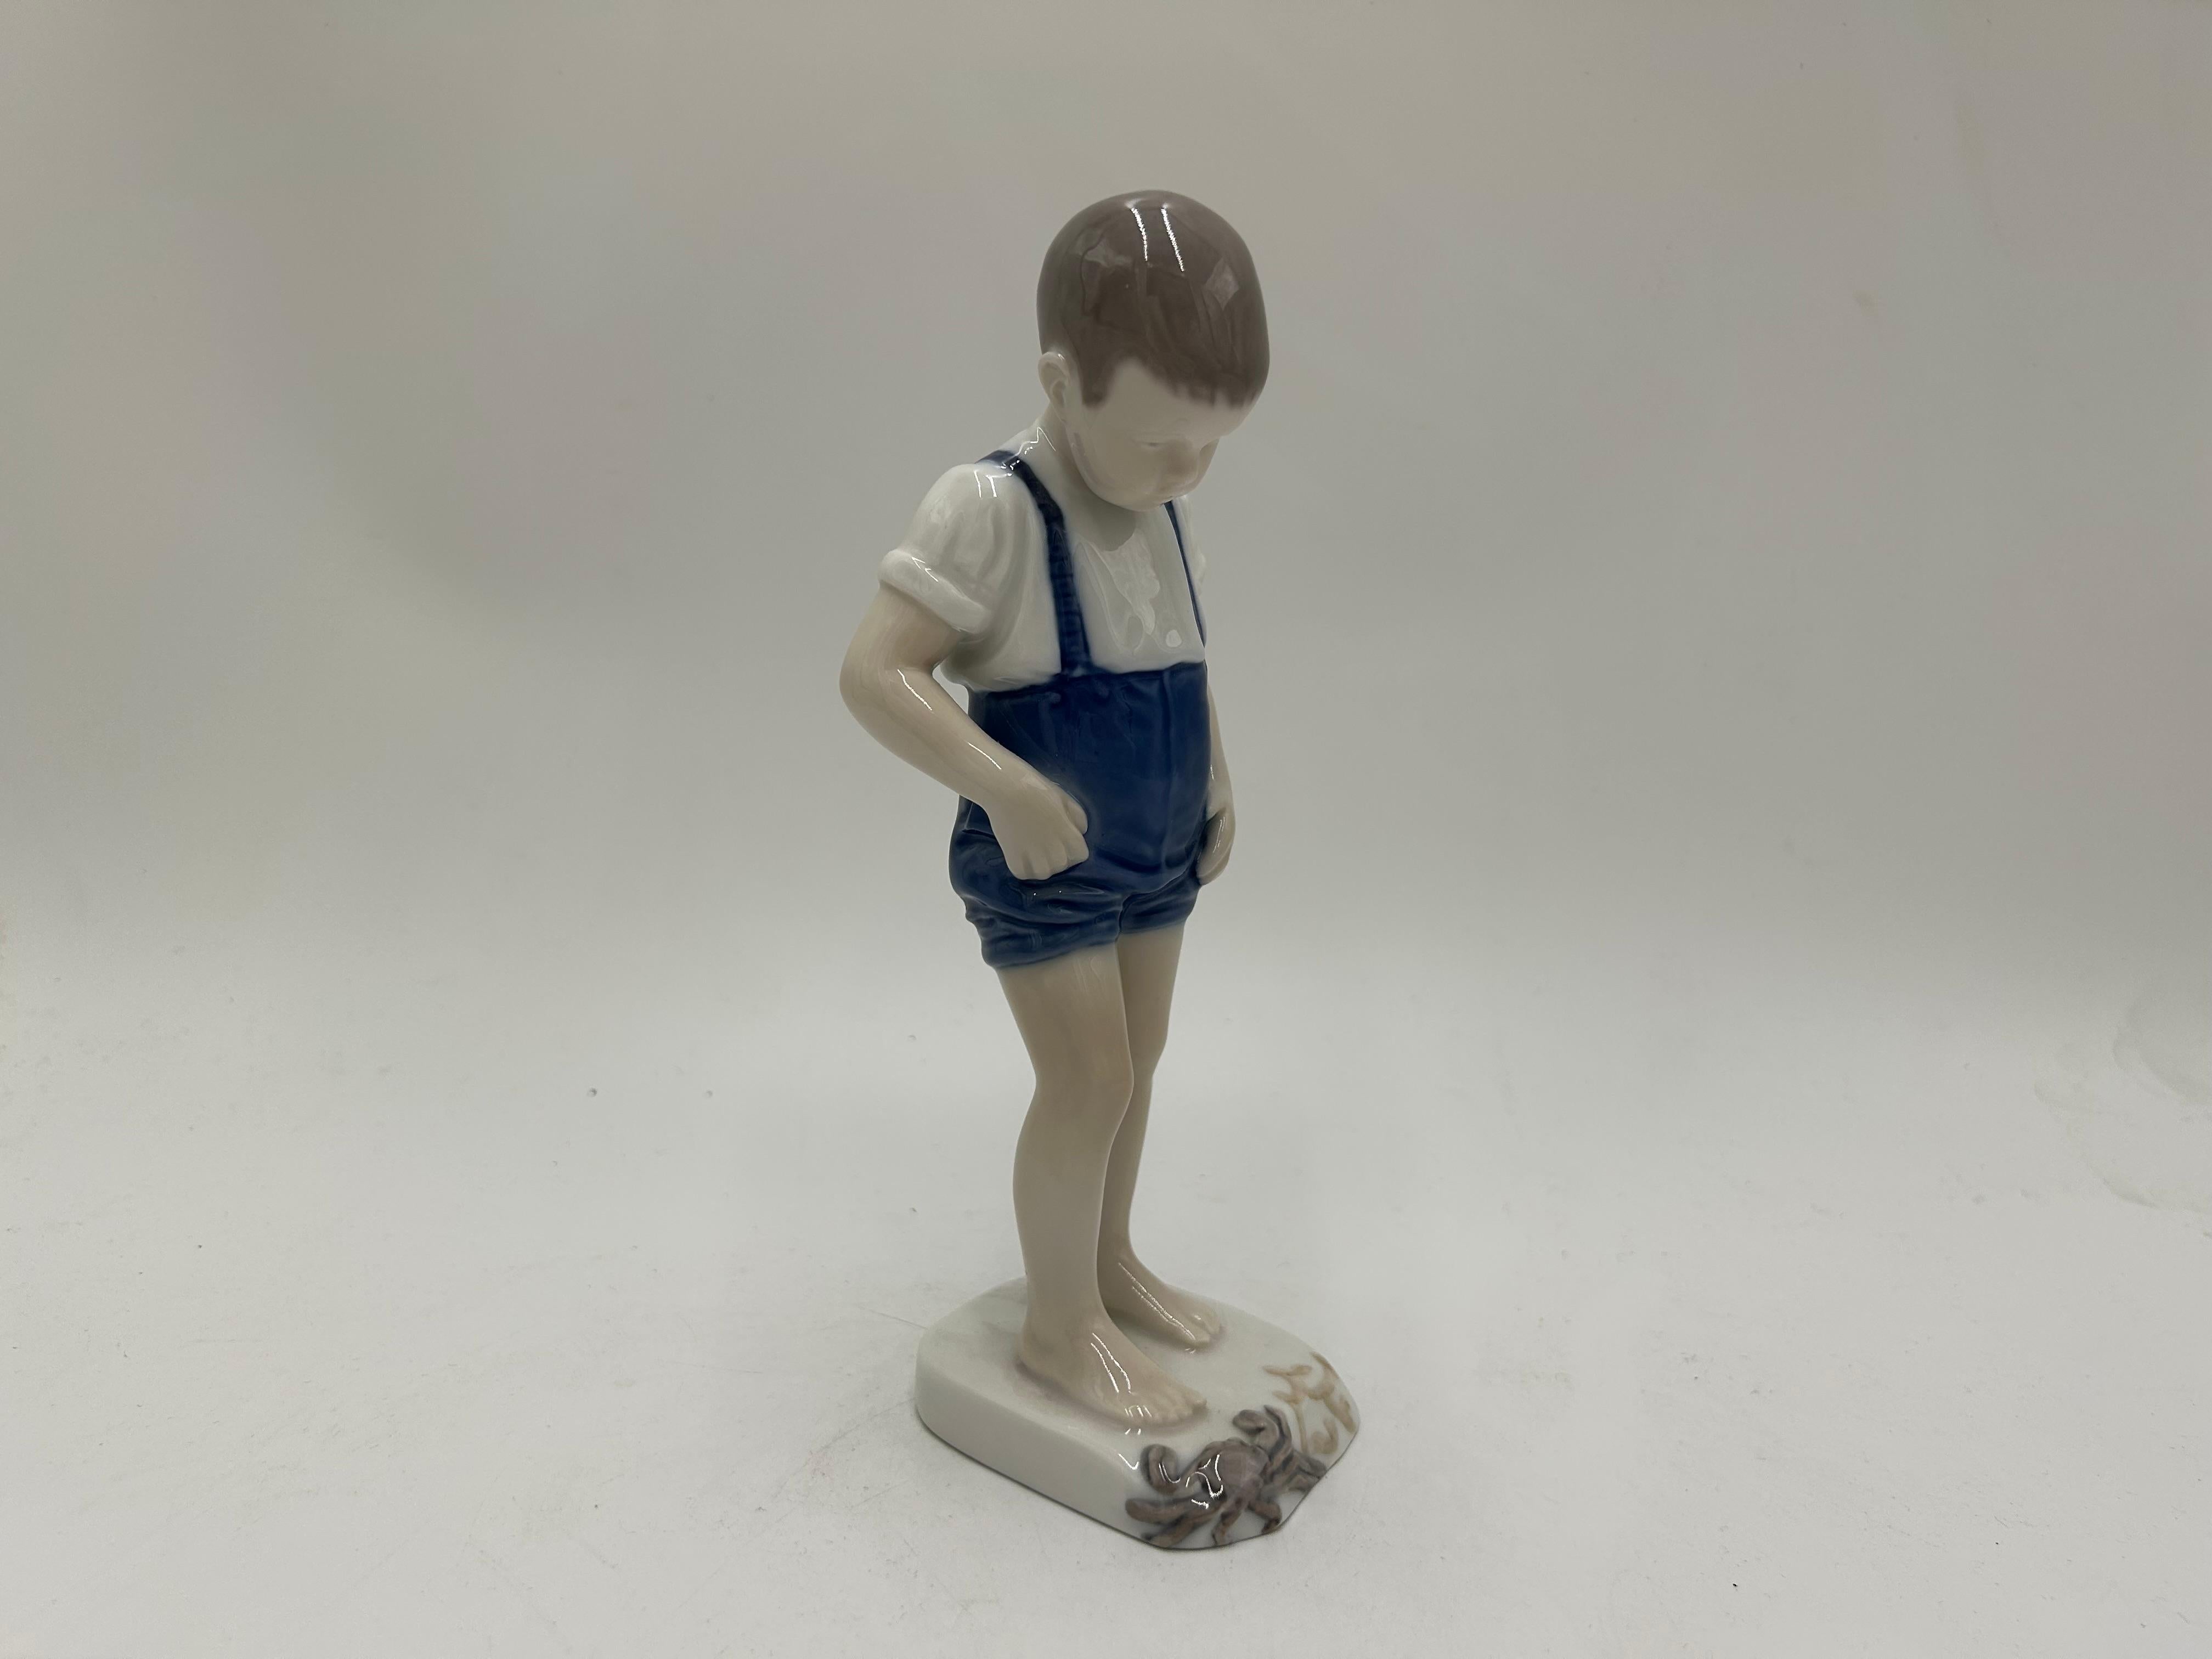 Figurine en porcelaine d'un garçon avec un crabe
Fabriqué par la manufacture danoise Bing & Grondahl.
Marque utilisée en 1948-1952.
Très bon état, aucun dommage.
hauteur : 20cm
largeur : 6cm
profondeur : 6cm